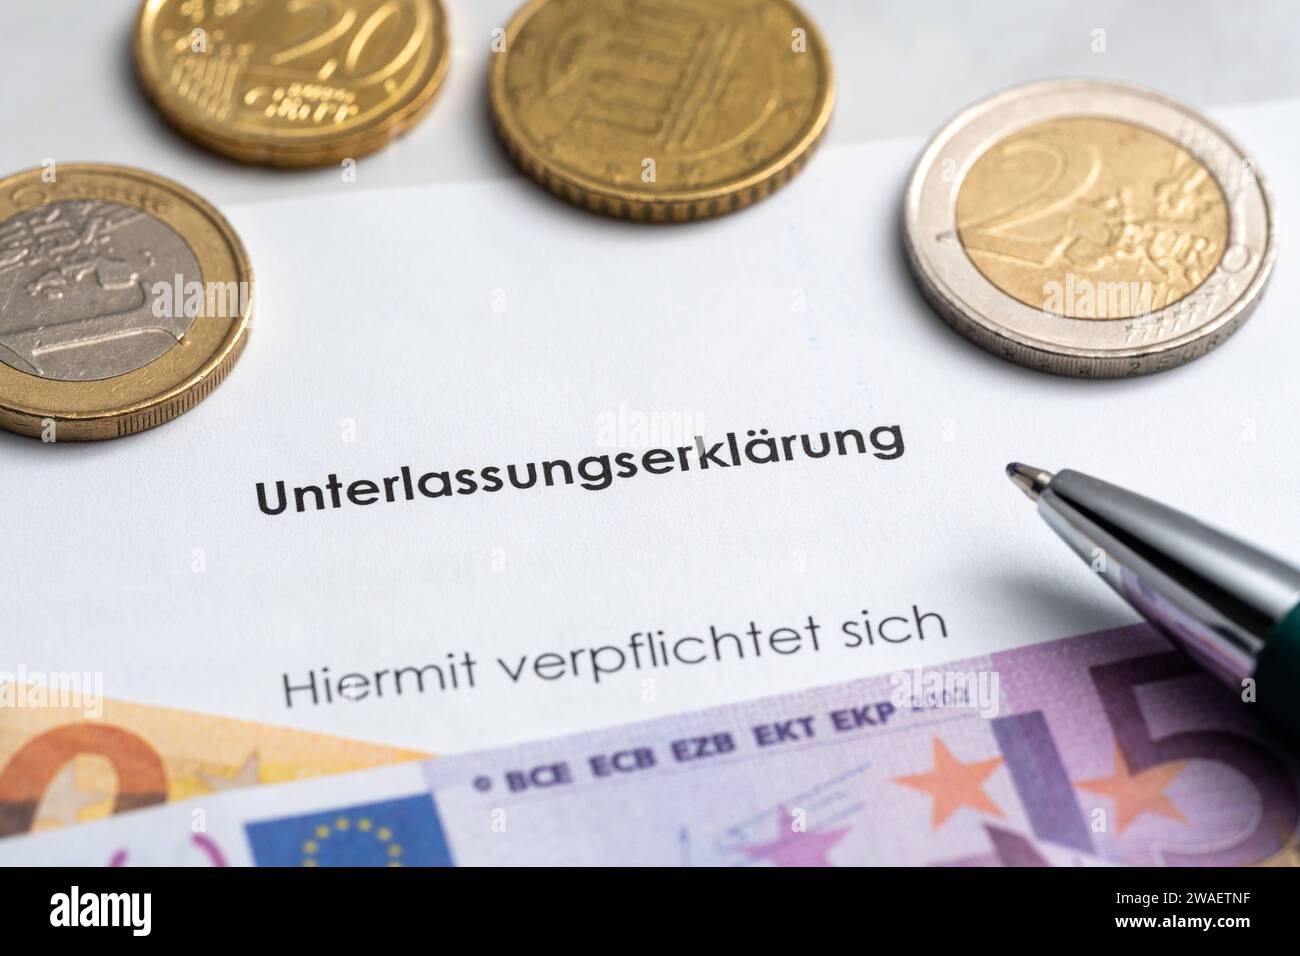 Bayern, Deutschland - 3. Januar 2023: Eine Unterlassungserklärung mit Euro Geldscheinen und Münzen *** eine Unterlassungserklärung mit Euro Geldscheinen und Münzen Stockfoto